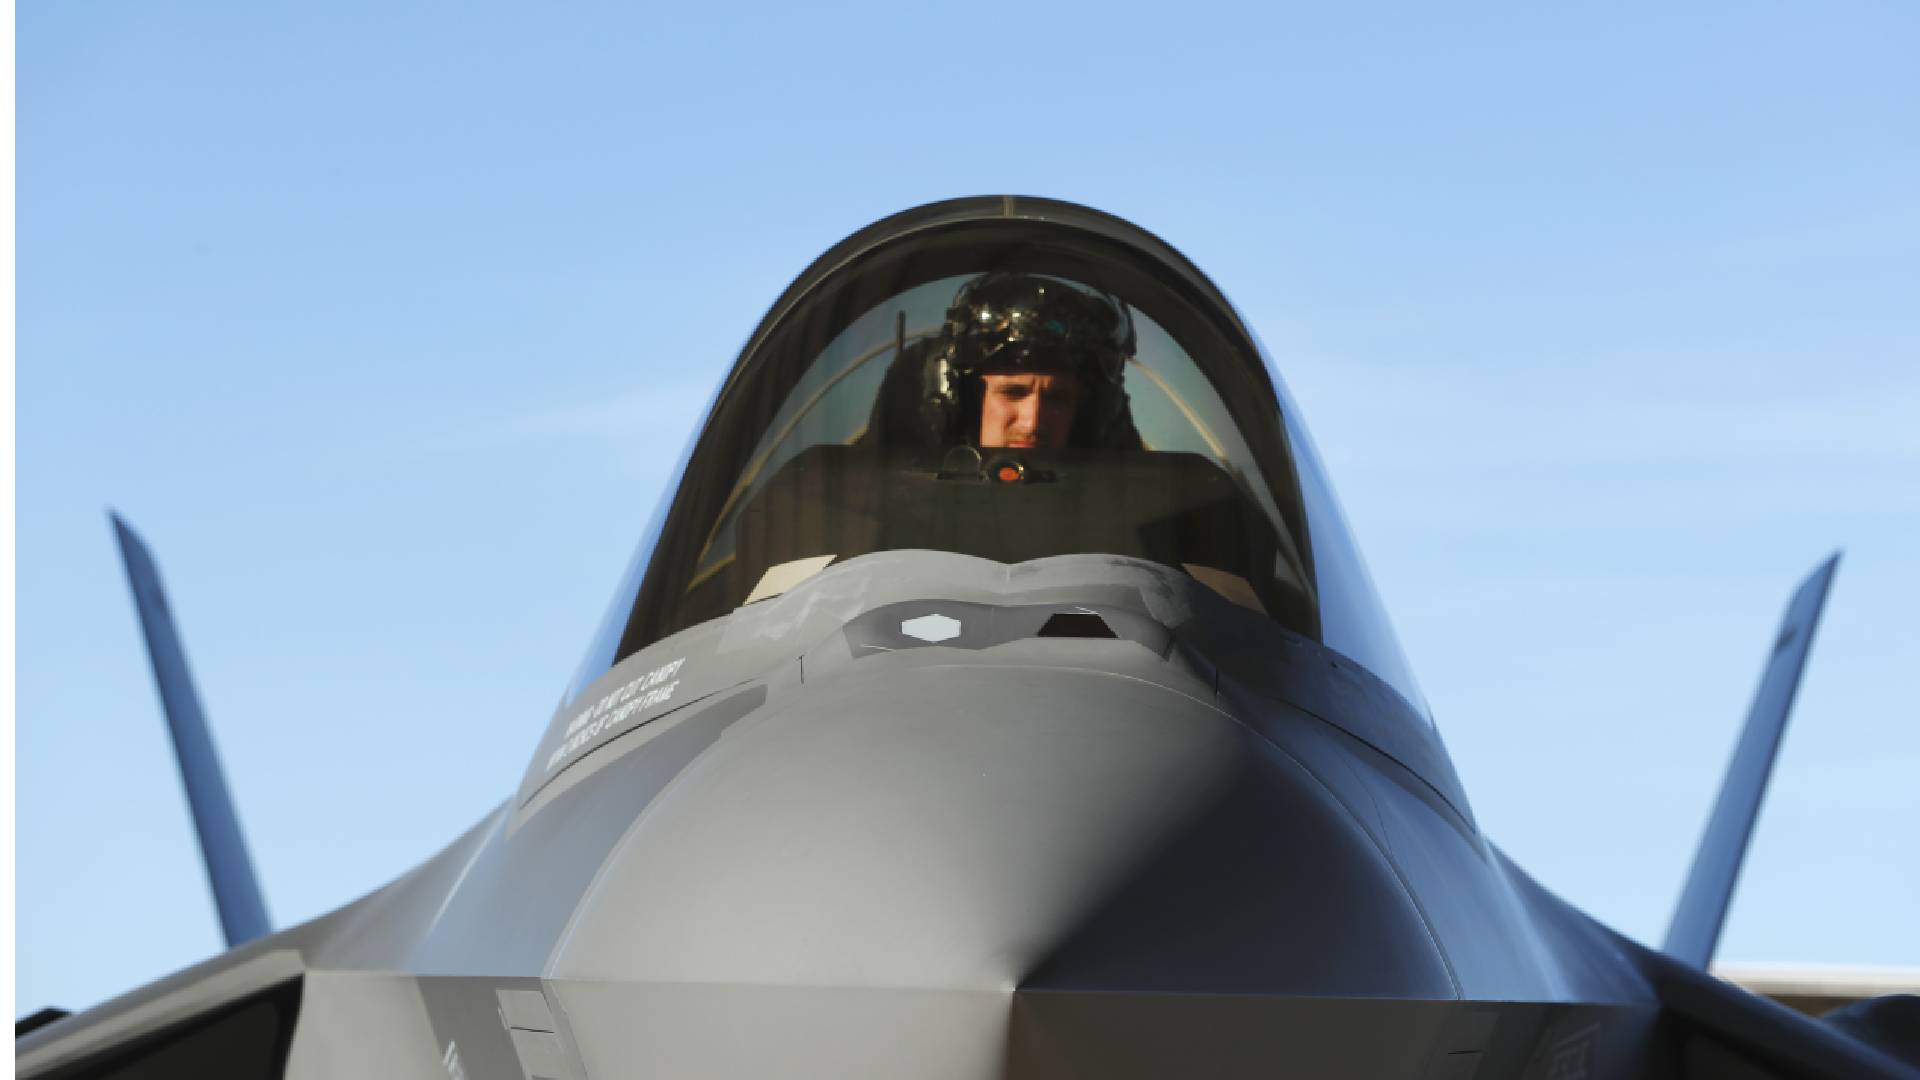 Letouny F-35 budou brzy obsluhovat čeští piloti.